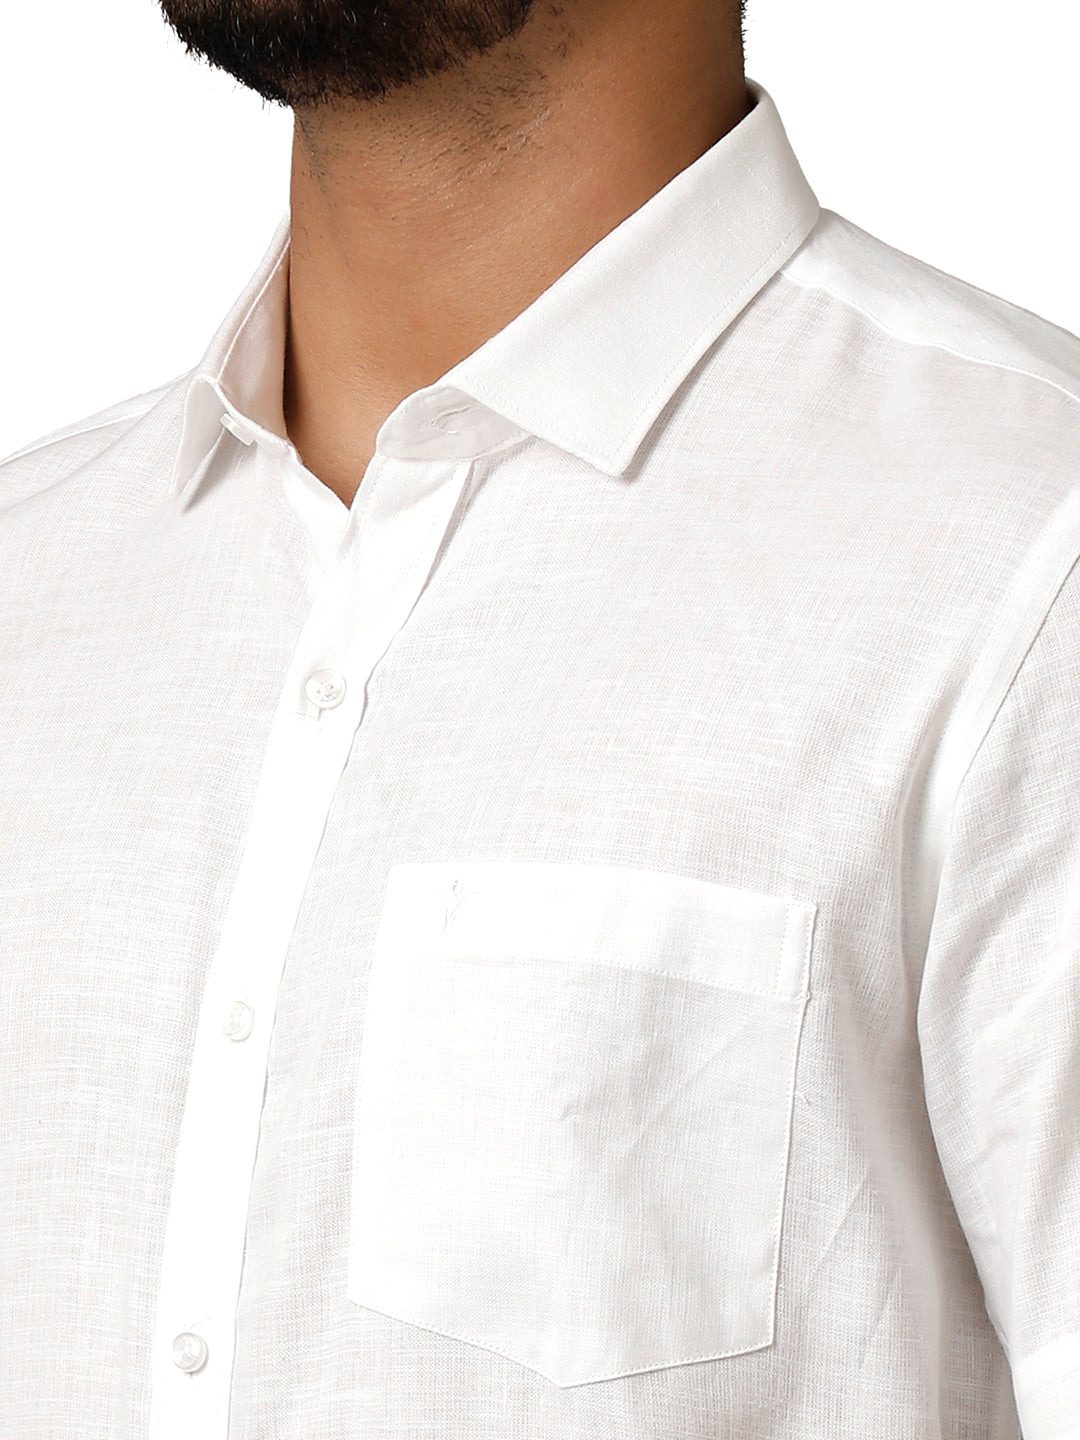 Mens 100% Pure Linen White Shirt Half Sleeves Irish